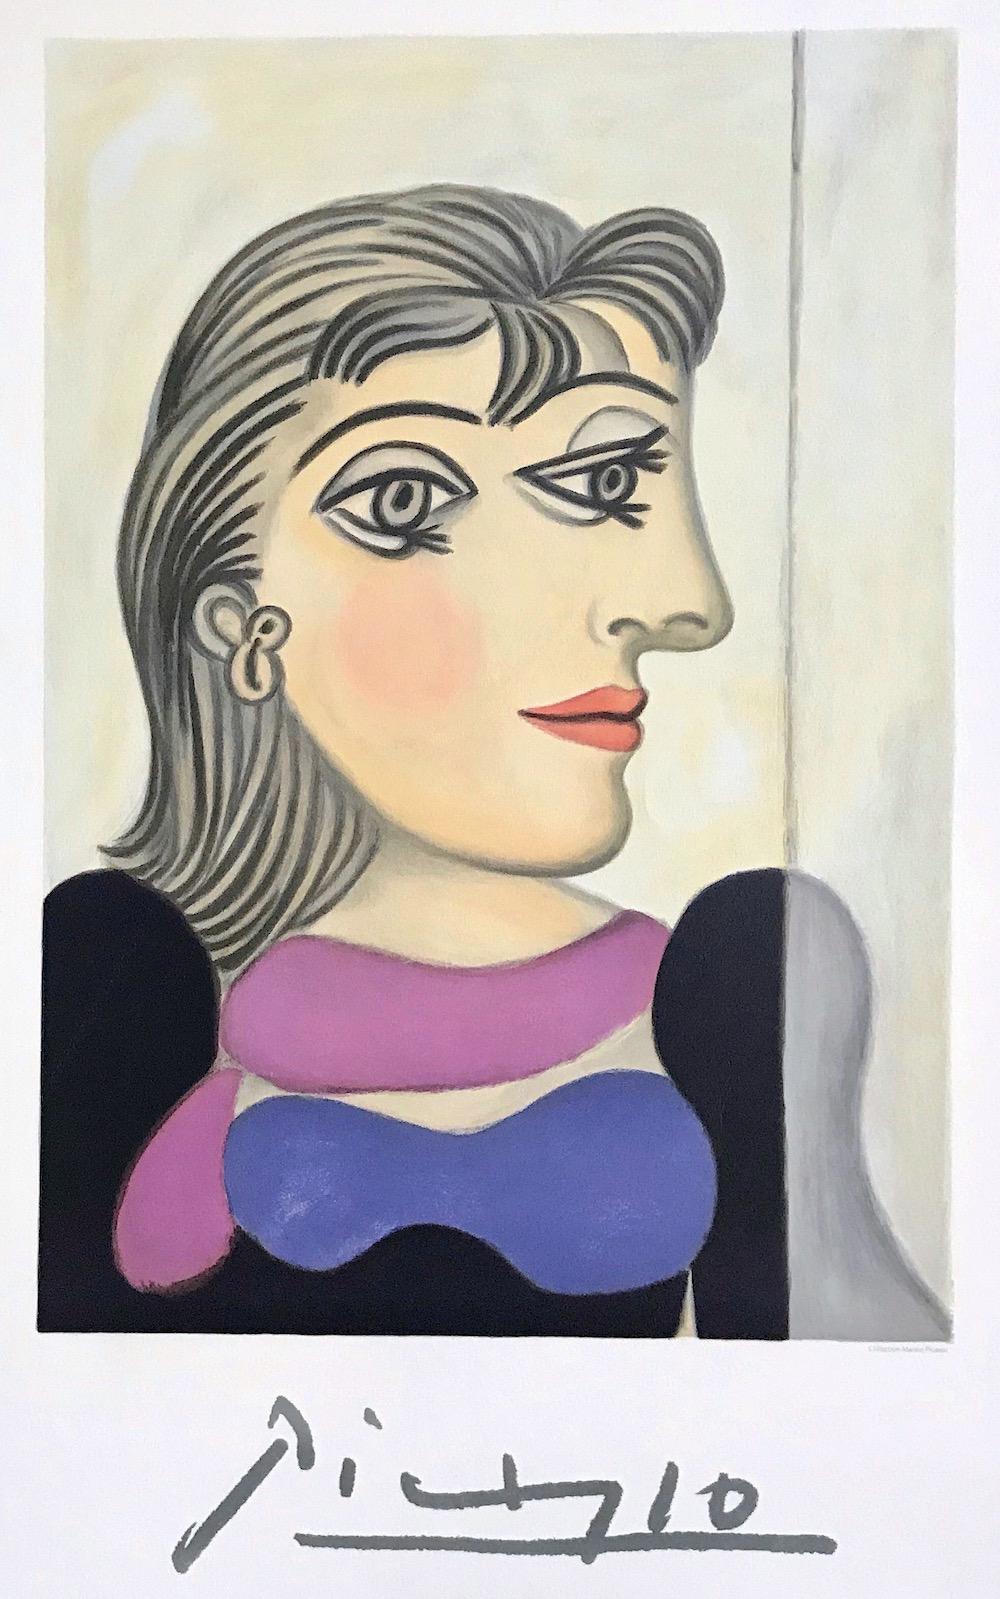 BUSTE DE FEMME AU FOULARD MAUVE Lithograph, Abstract Female Portrait, Dora Maar - Print by (after) Pablo Picasso